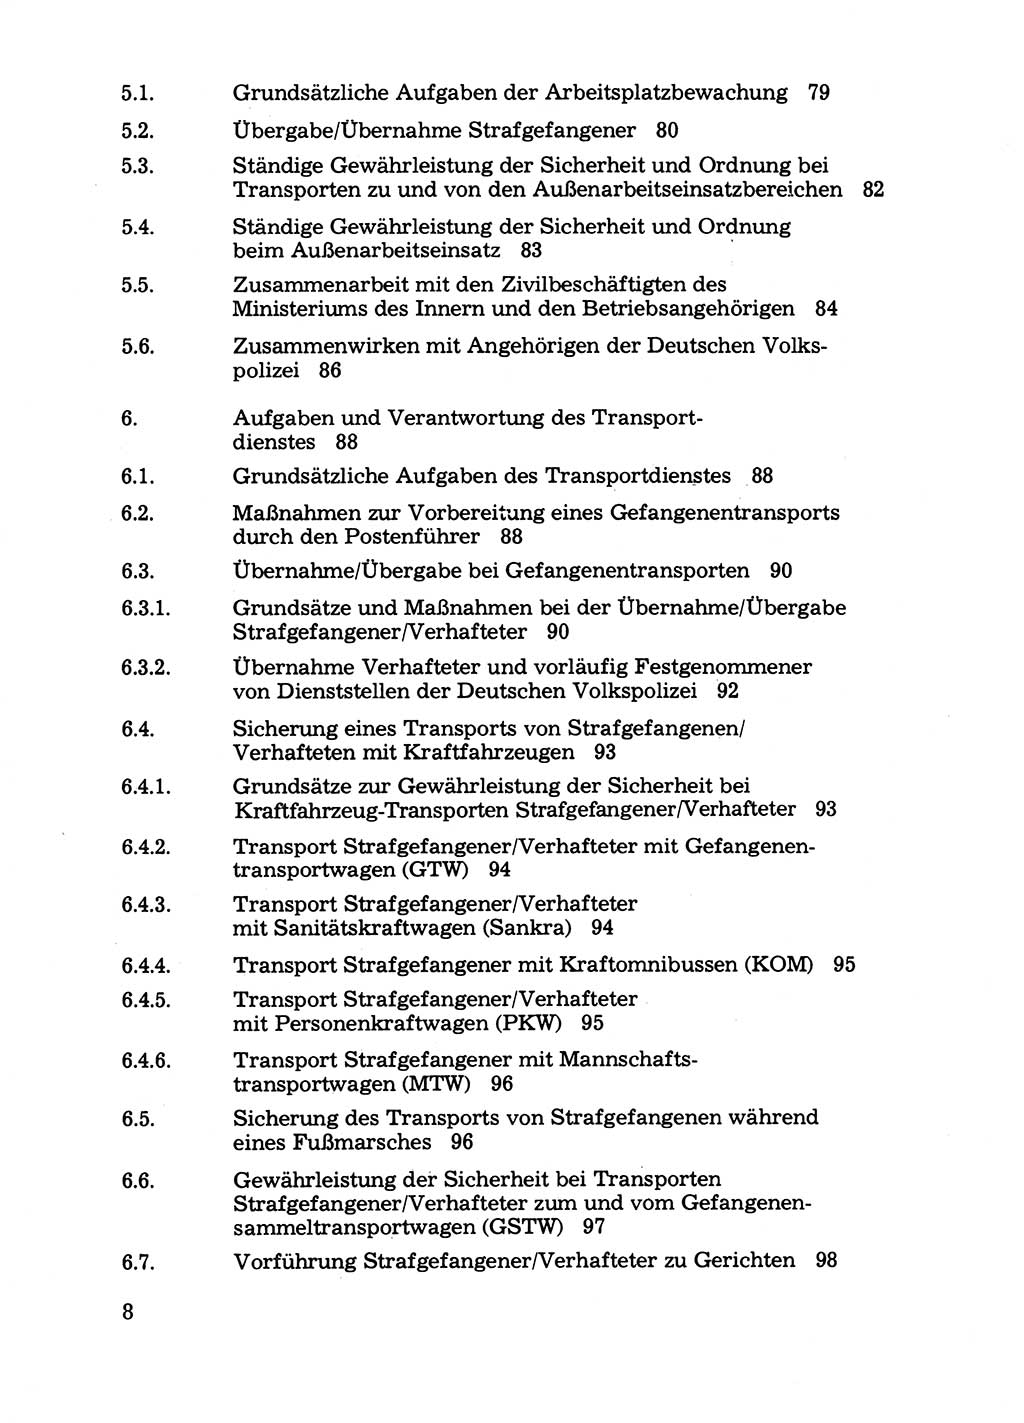 Handbuch für operative Dienste, Abteilung Strafvollzug (SV) [Ministerium des Innern (MdI) Deutsche Demokratische Republik (DDR)] 1981, Seite 8 (Hb. op. D. Abt. SV MdI DDR 1981, S. 8)